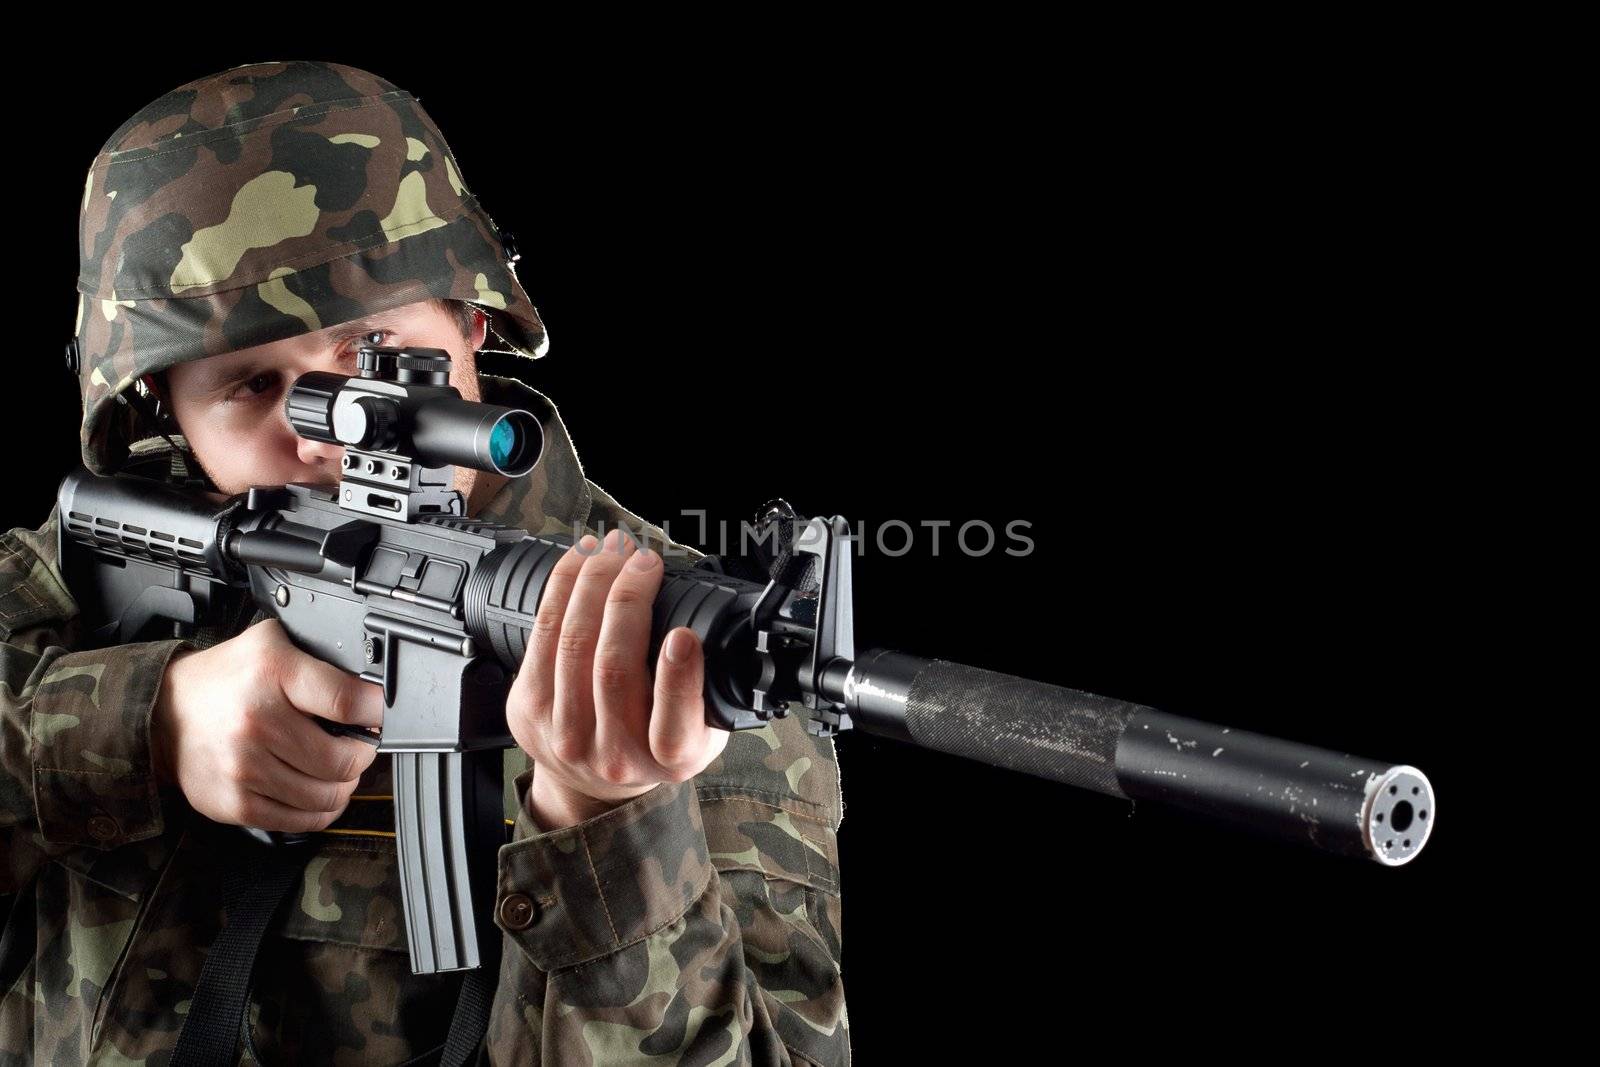 Armed man taking aim in studio. Closeup